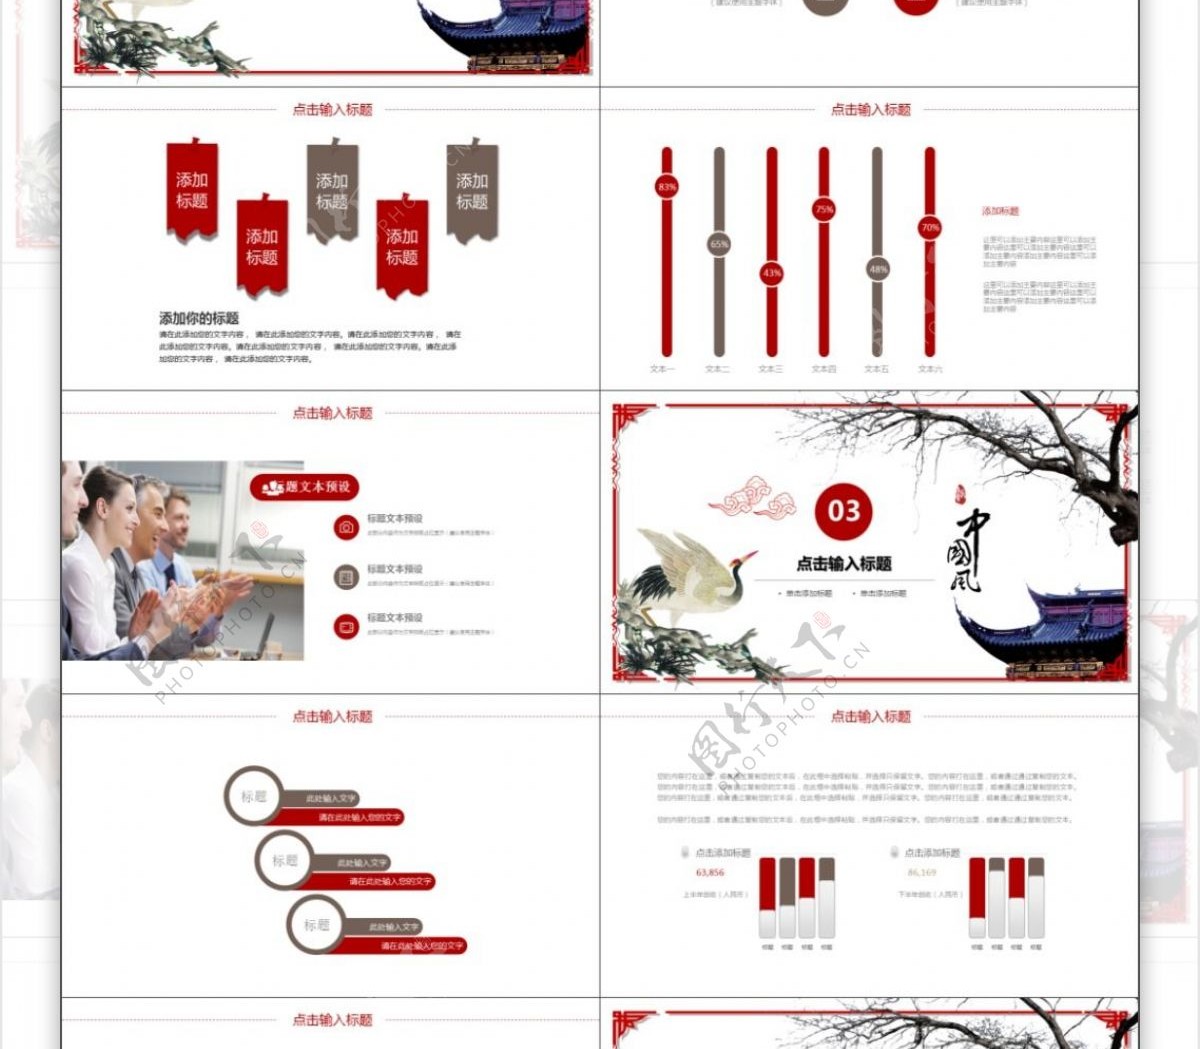 2019红褐色中国风产品宣传PPT模板